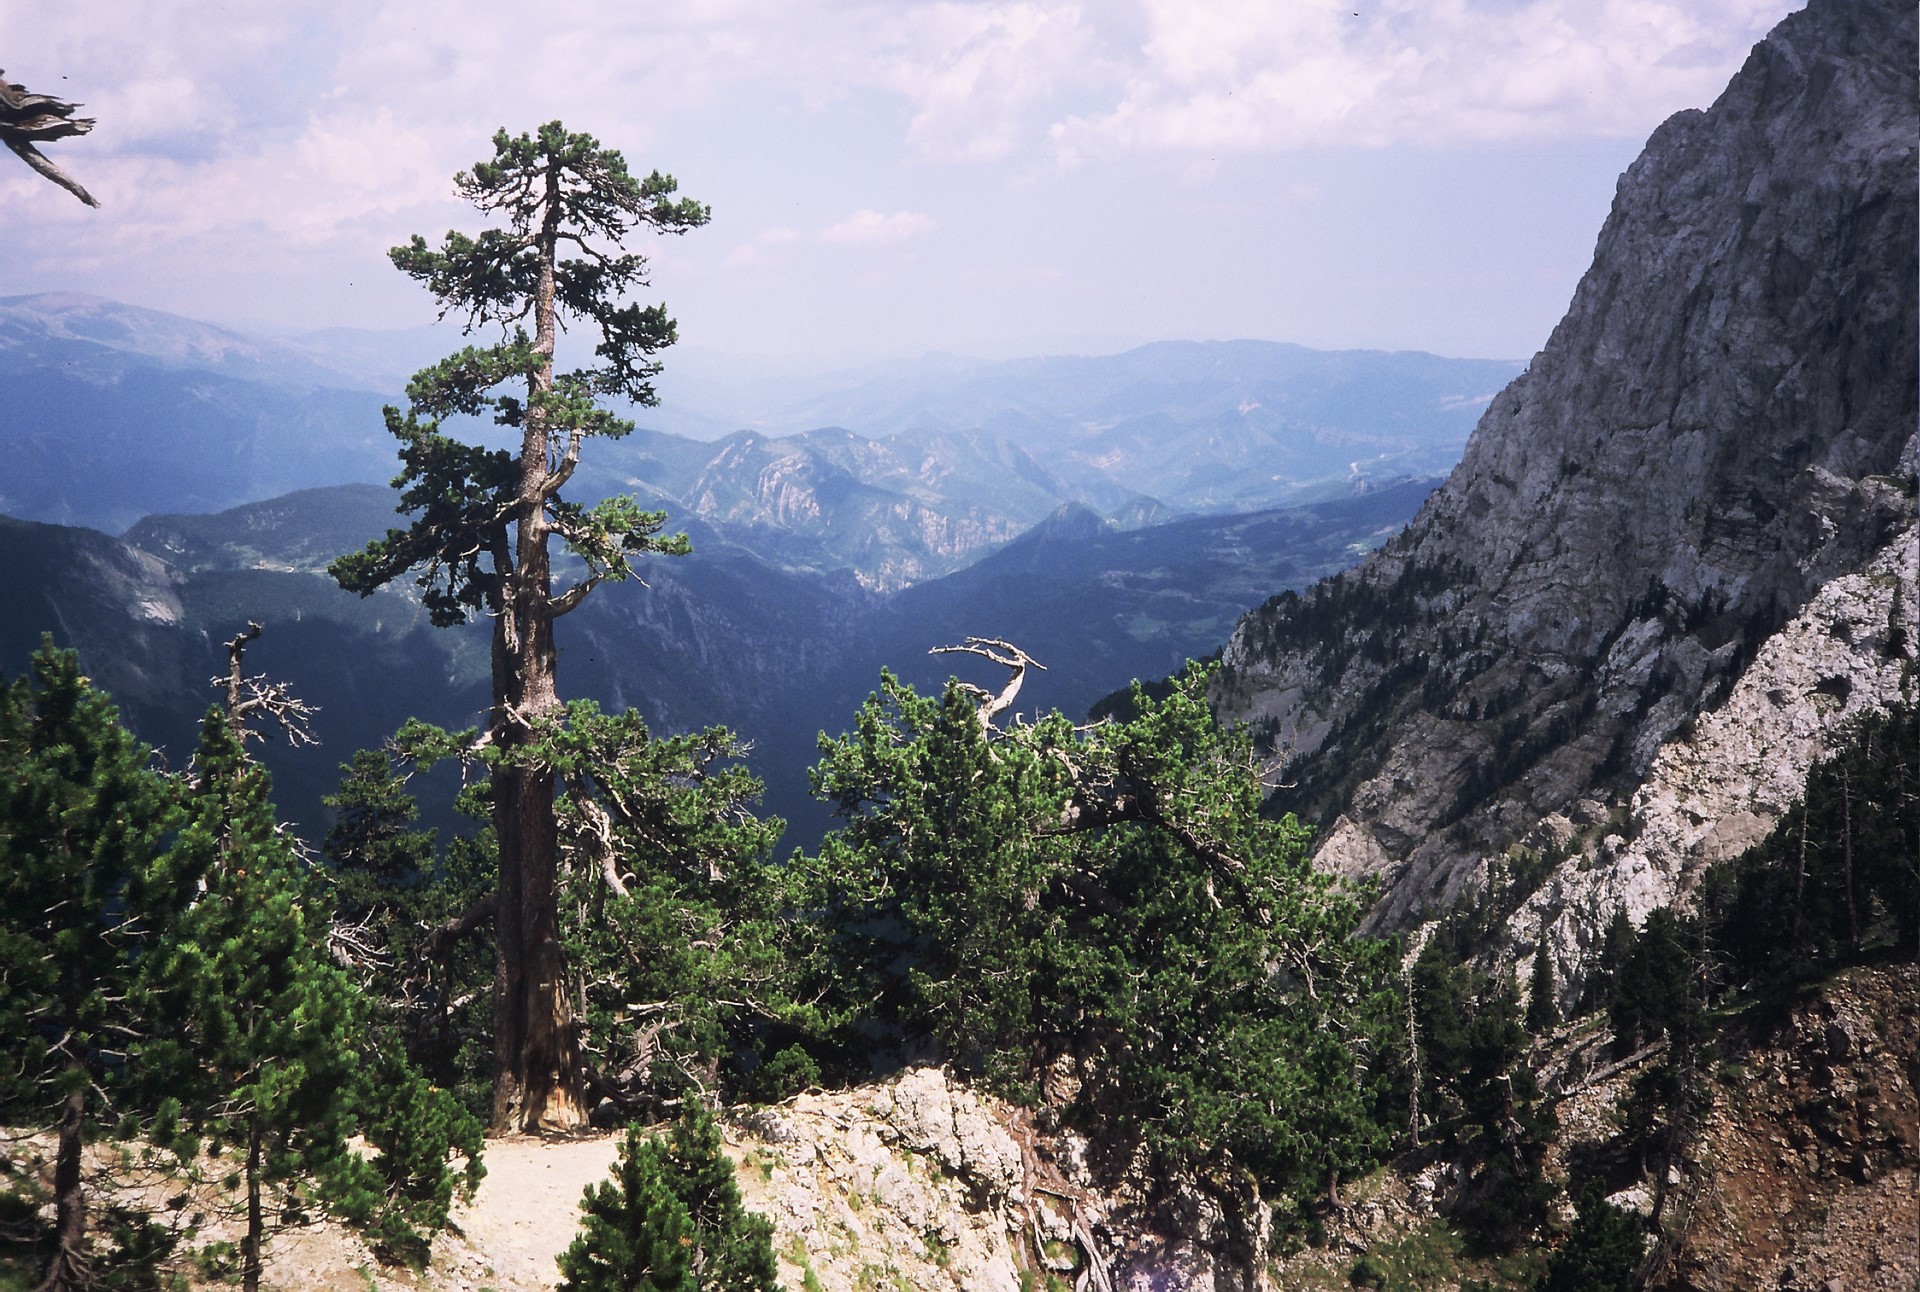 Espècie Pinus Uncinata, una de les espècies d'arbres que inclou l'estudi. Lloc: Pedraforca, Catalunya. Autoria: Laia andreu-Hayles.